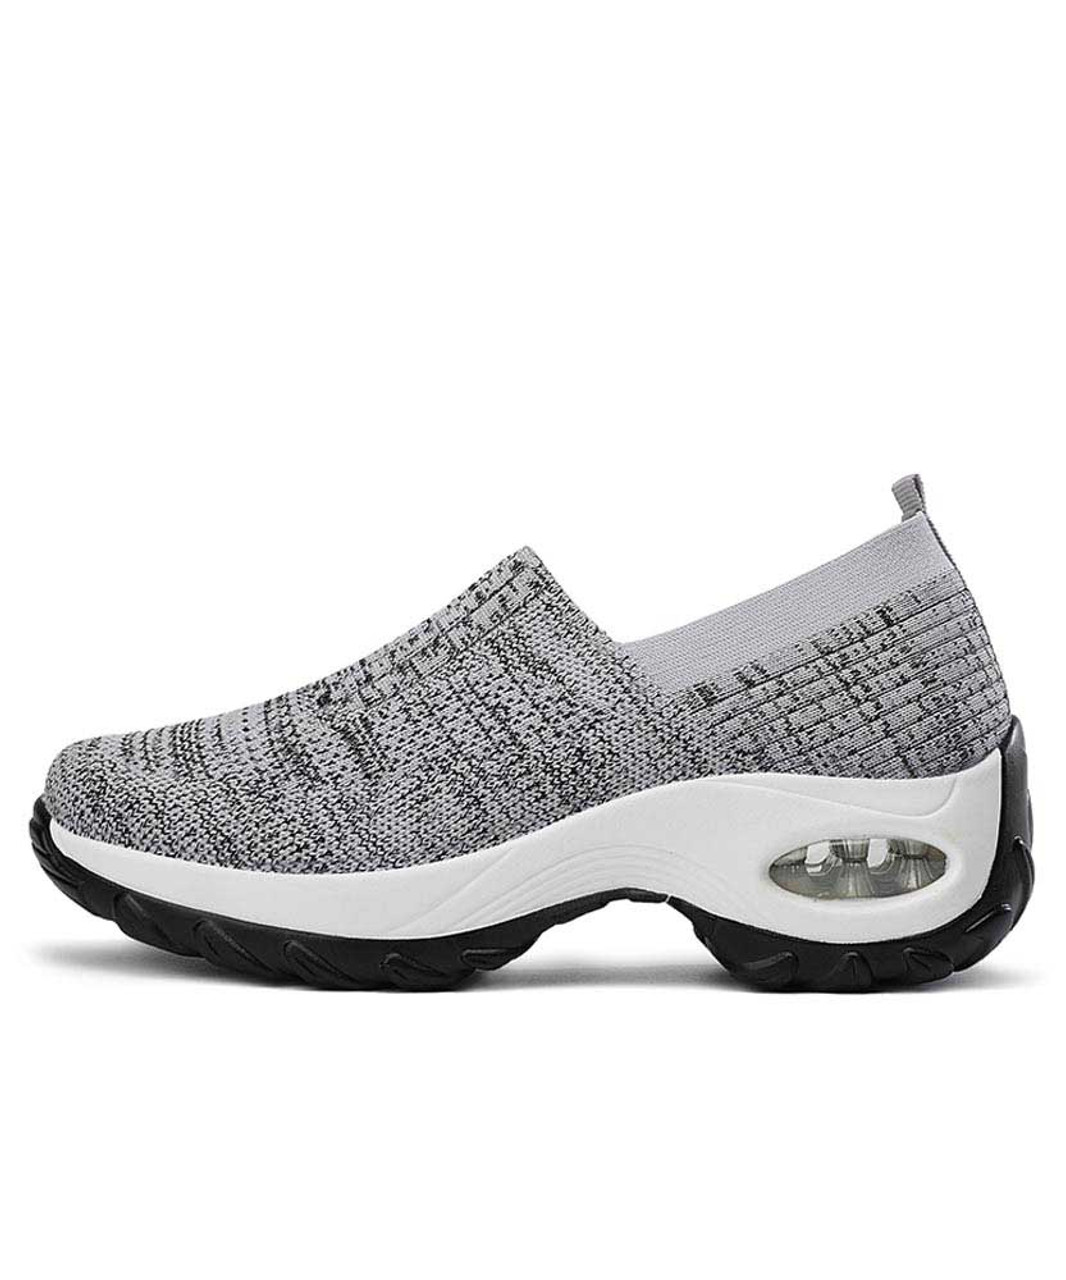 Grey stripe slip on double rocker bottom sneaker | Womens rocker shoes ...